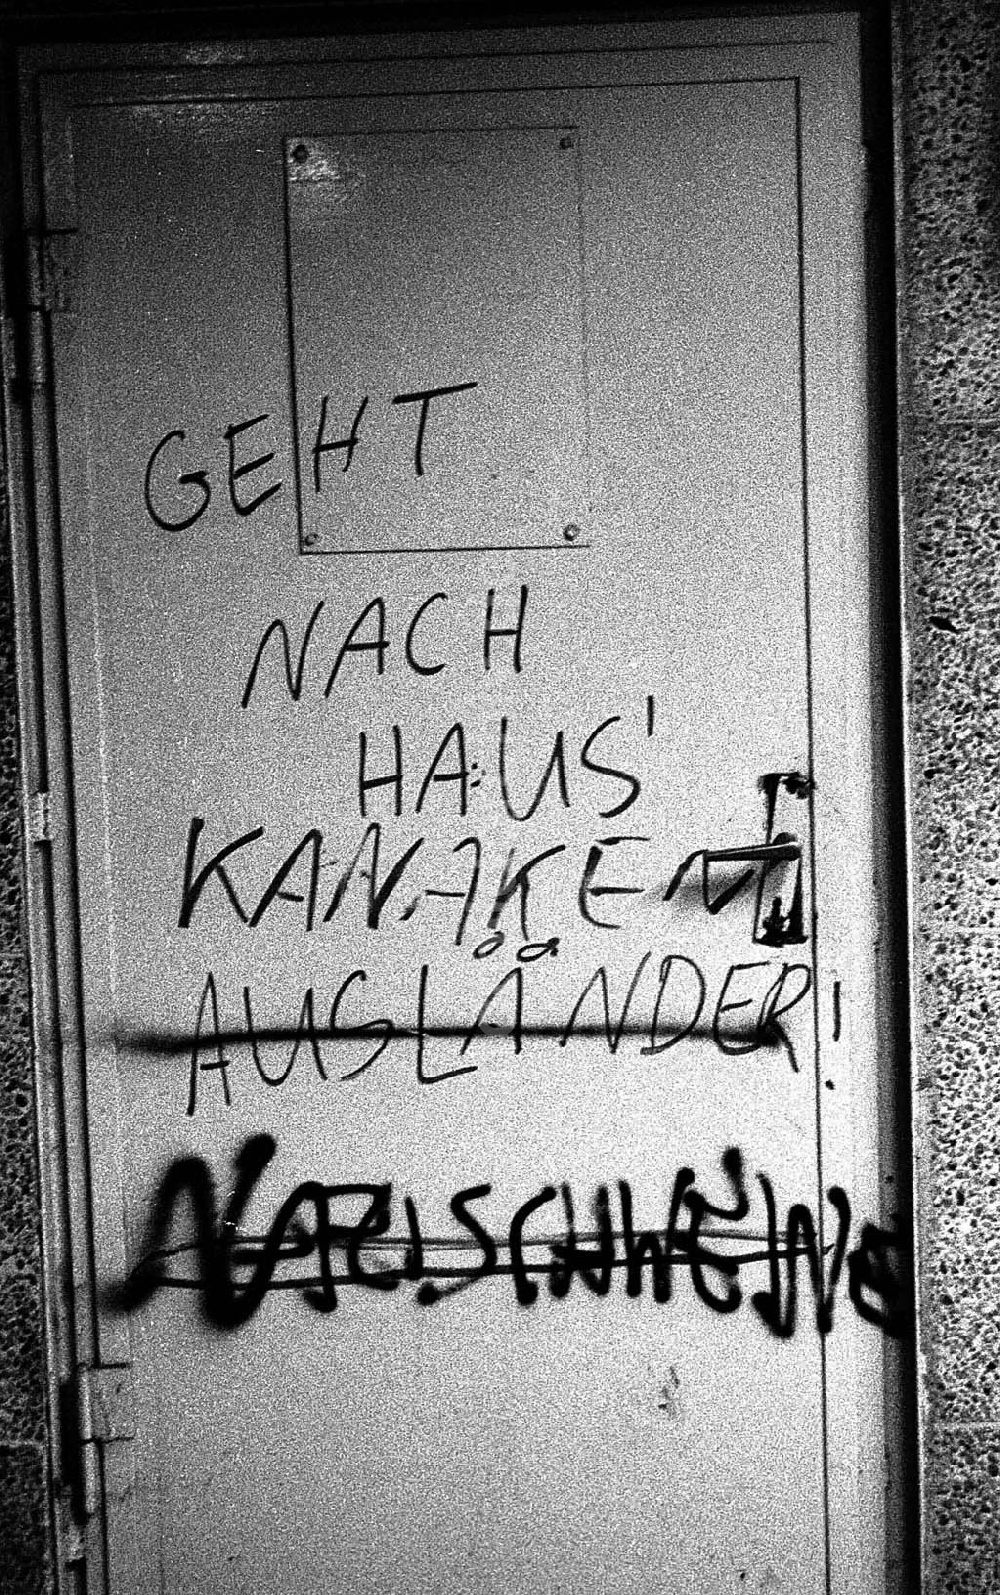 : Neofaschistische Schmierereien an einer Tür Foto: Lenke